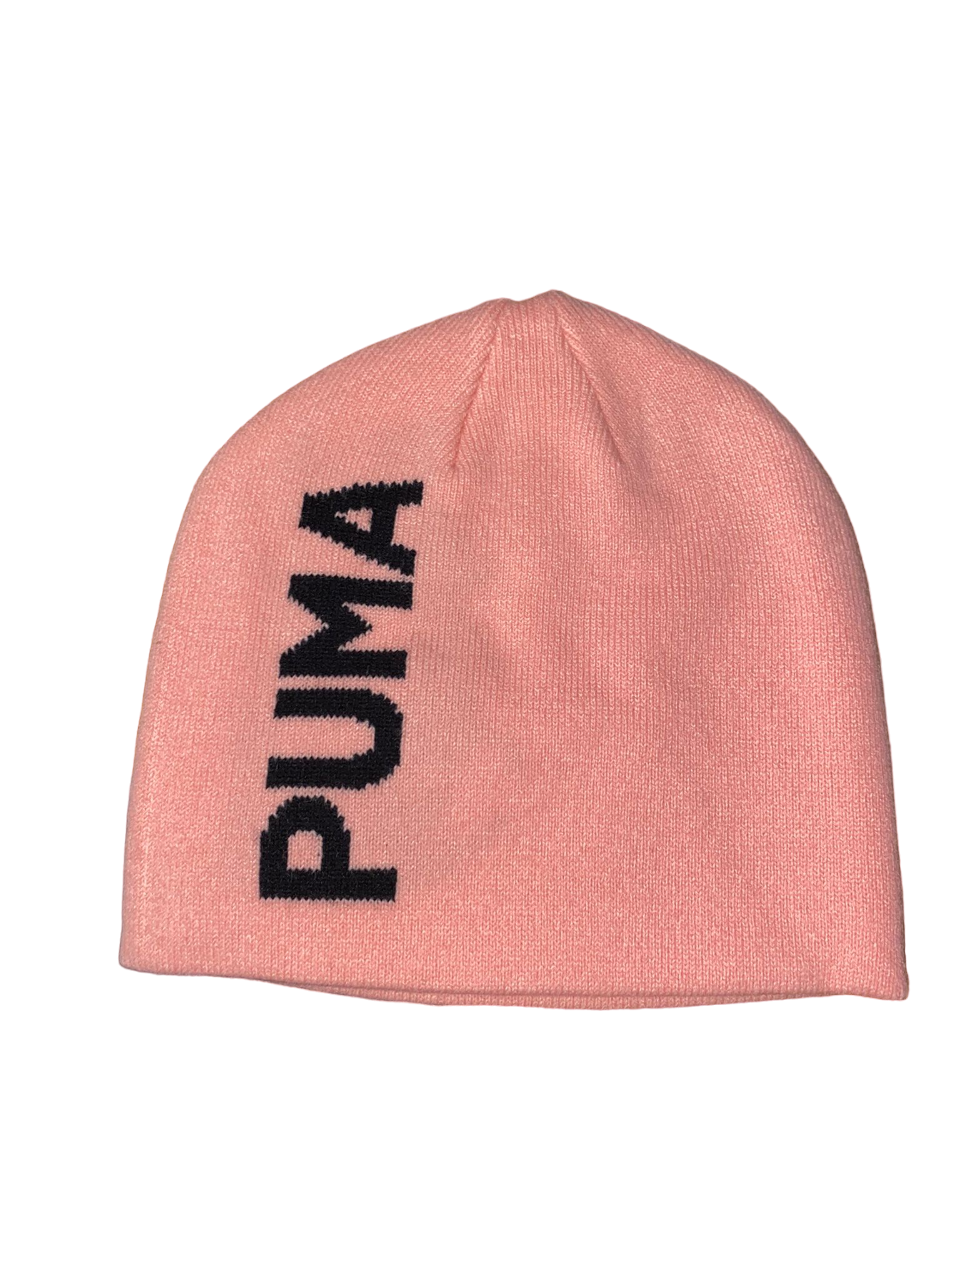 Puma cappello a cuffia con logo grande 023461-04 pesca. Taglia unica